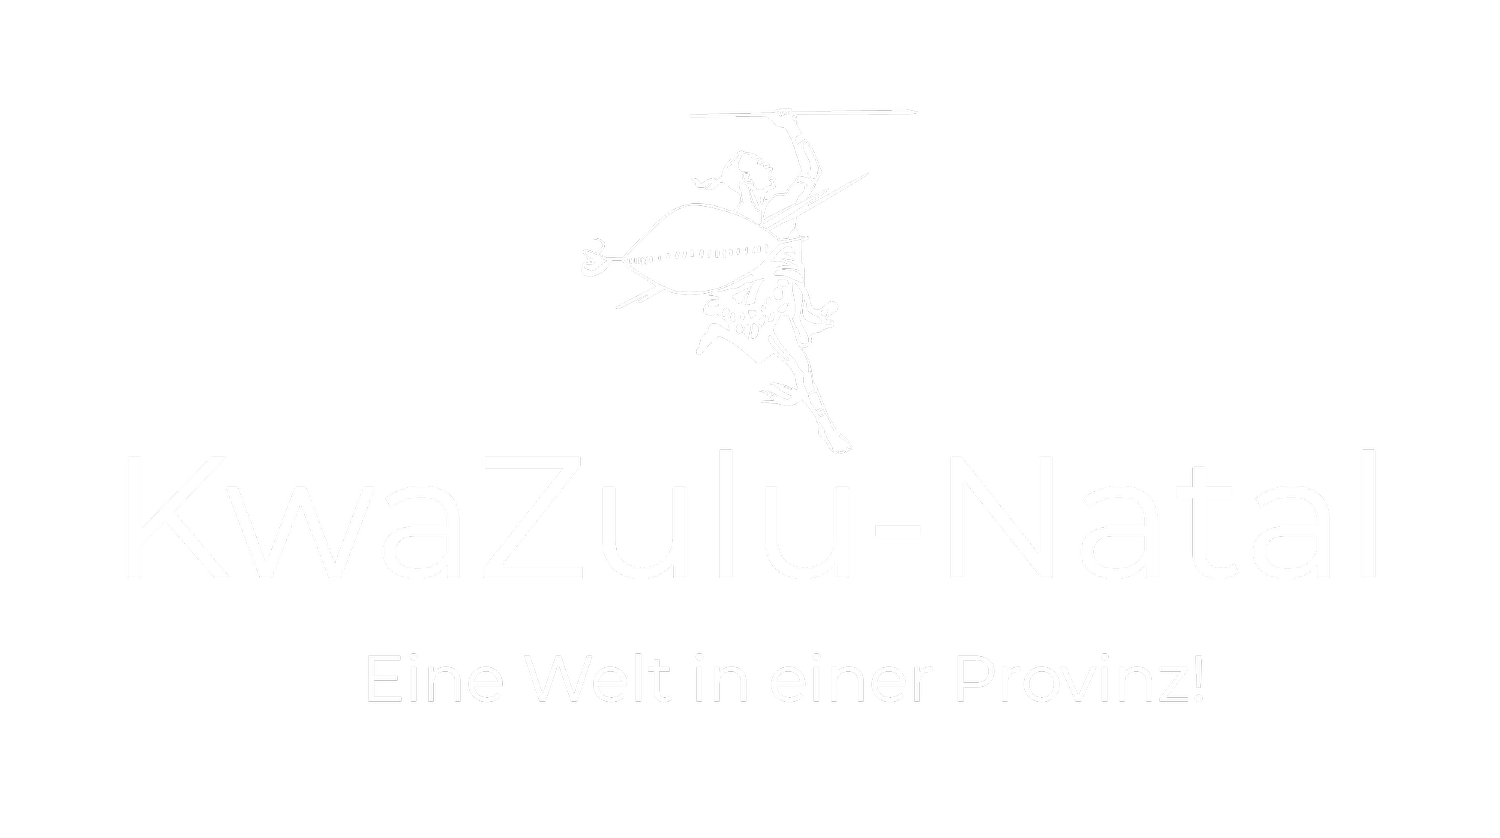 KwaZulu-Natal - Eine Welt in einer Provinz